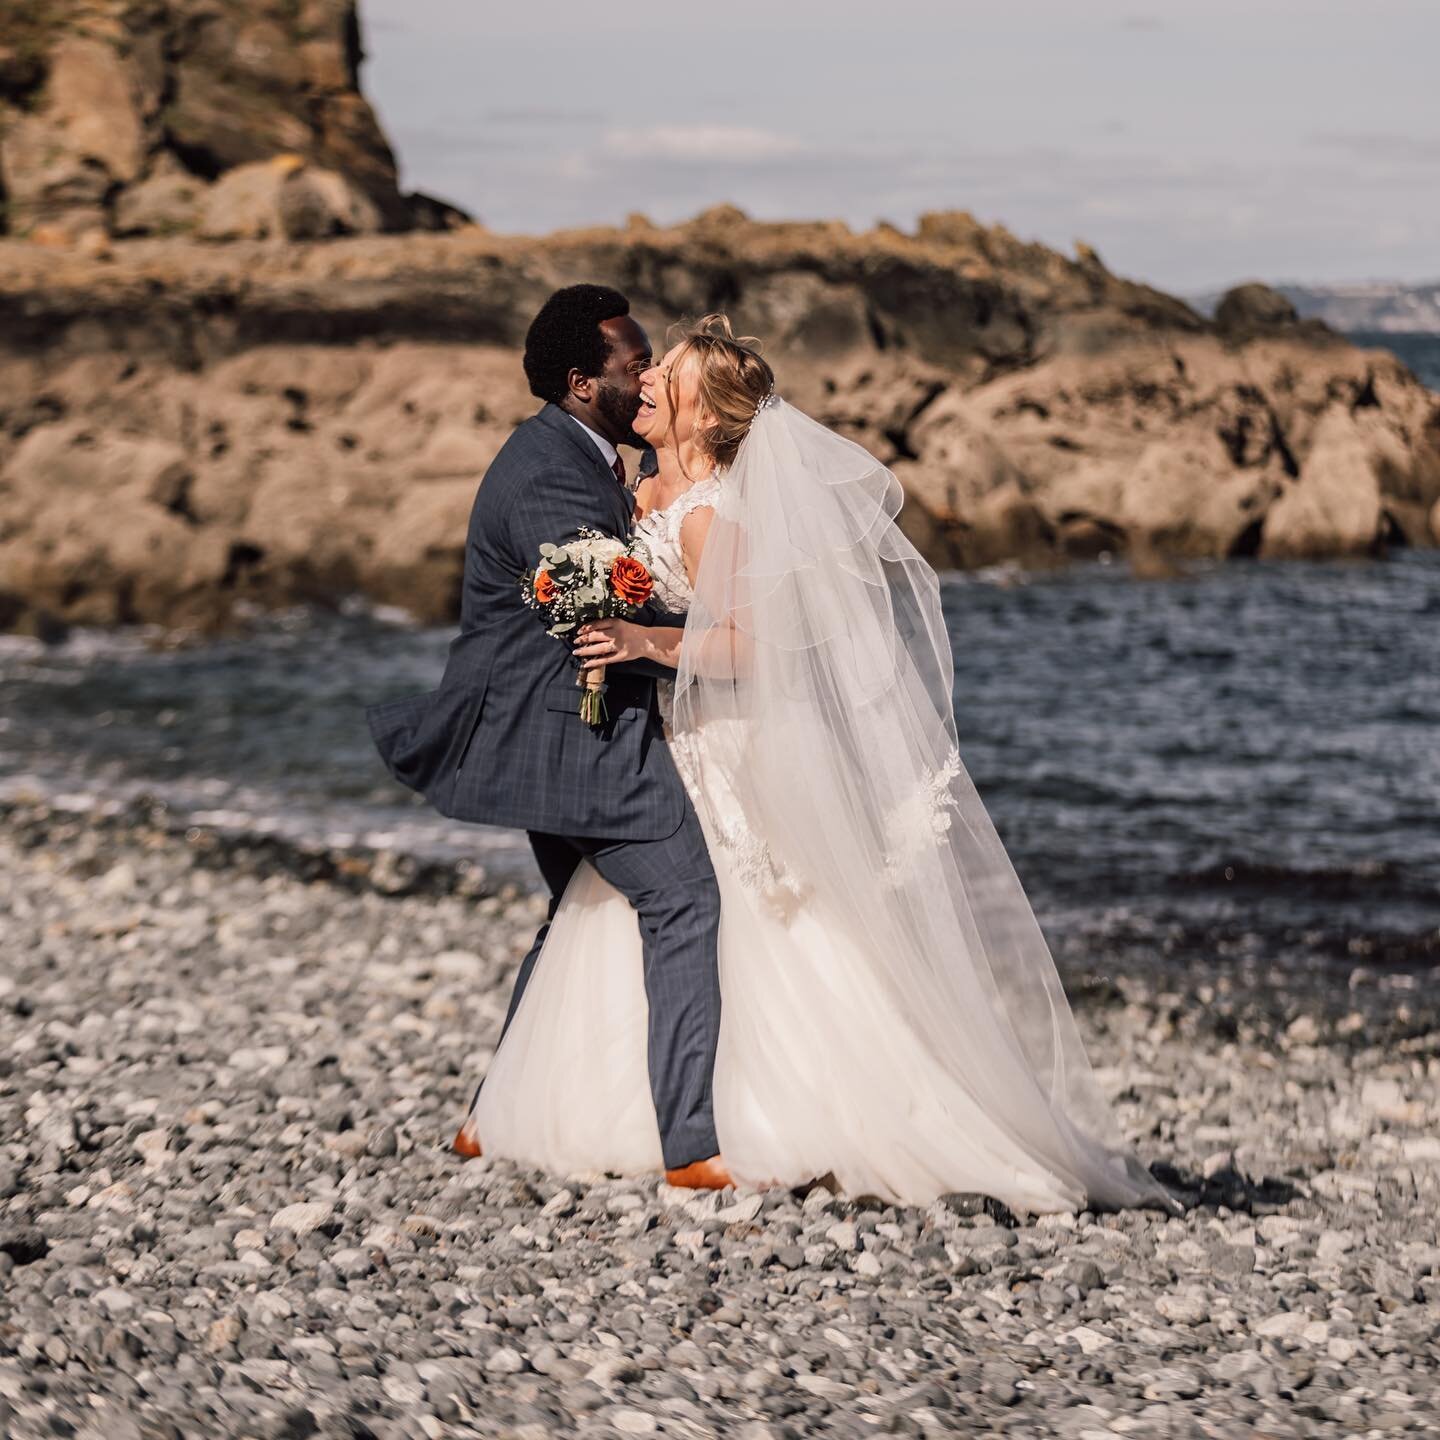 Happy 1st Wedding Anniversary @justkev92 @alicejoyamponsah 

What a day!! ☀️ 🏖️ ❤️ 

#coastalwedding #beachweddings #cornwallweddings #outdoorwedding #cornwallweddingphotographer #firstanniversary❤️